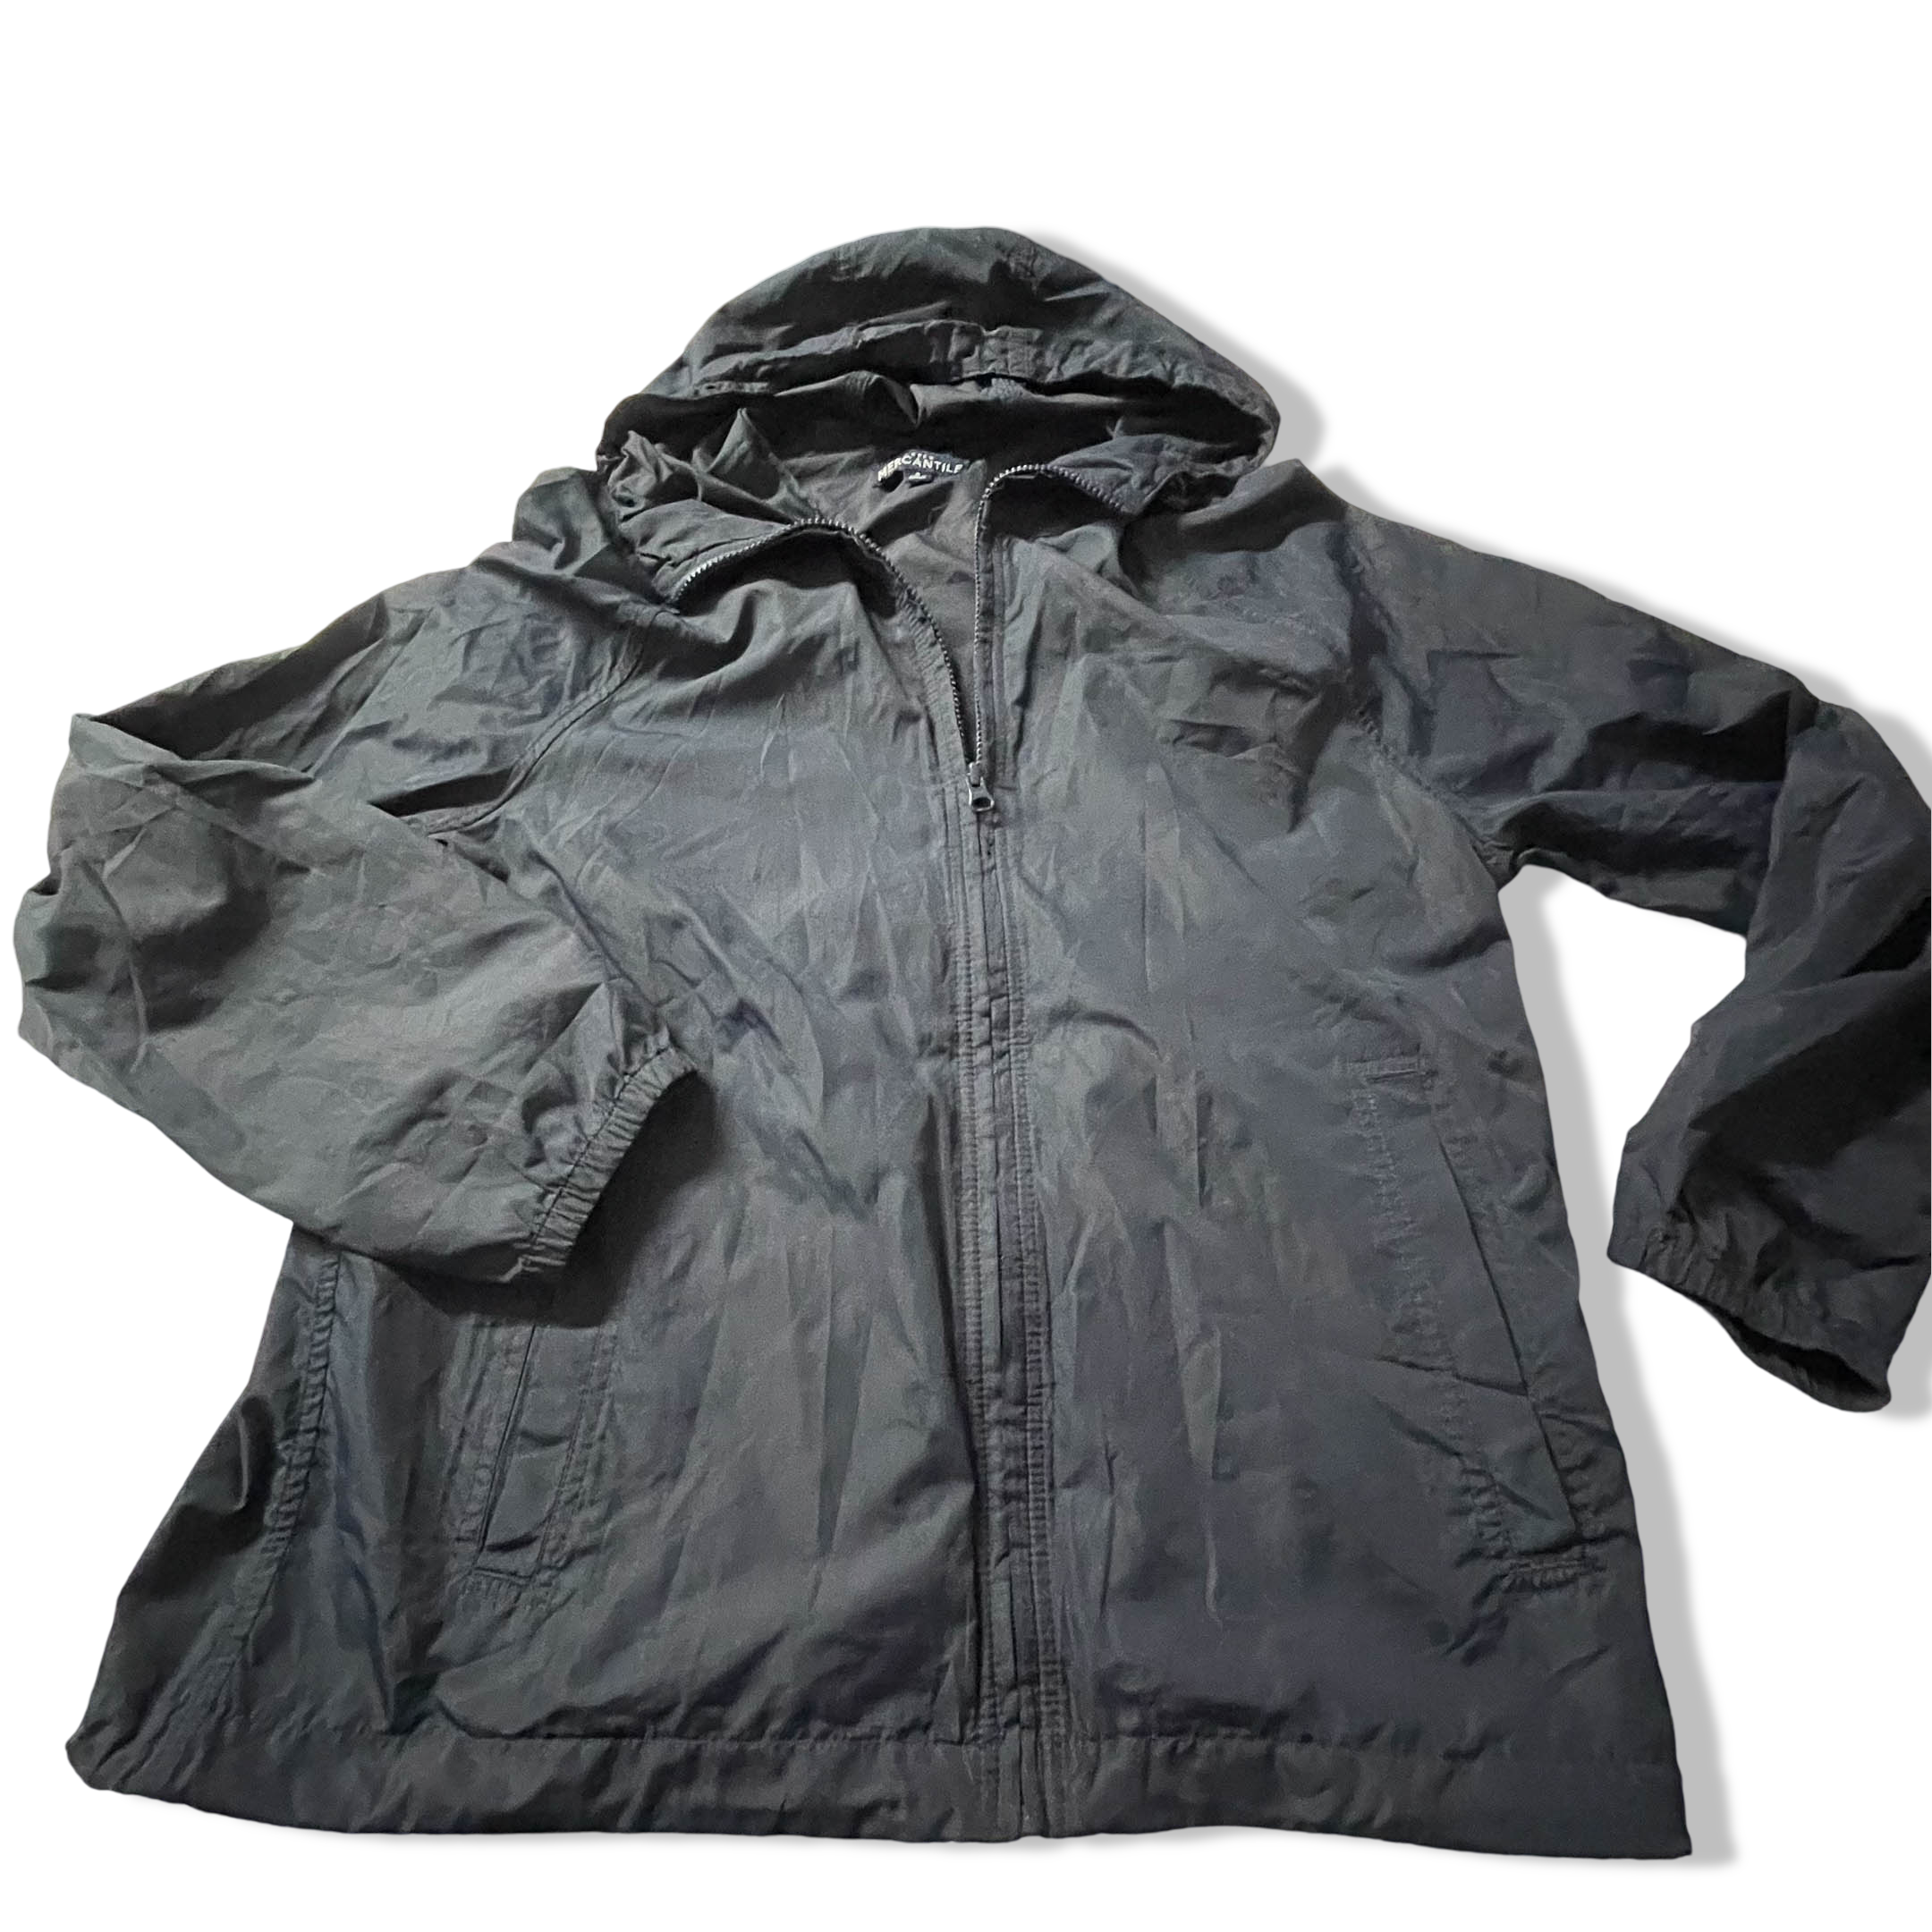 Vintage J.Crew Mercantile blue hooded rain jacket in S| Made in Vietnam|L26 W21|SKU 3844  